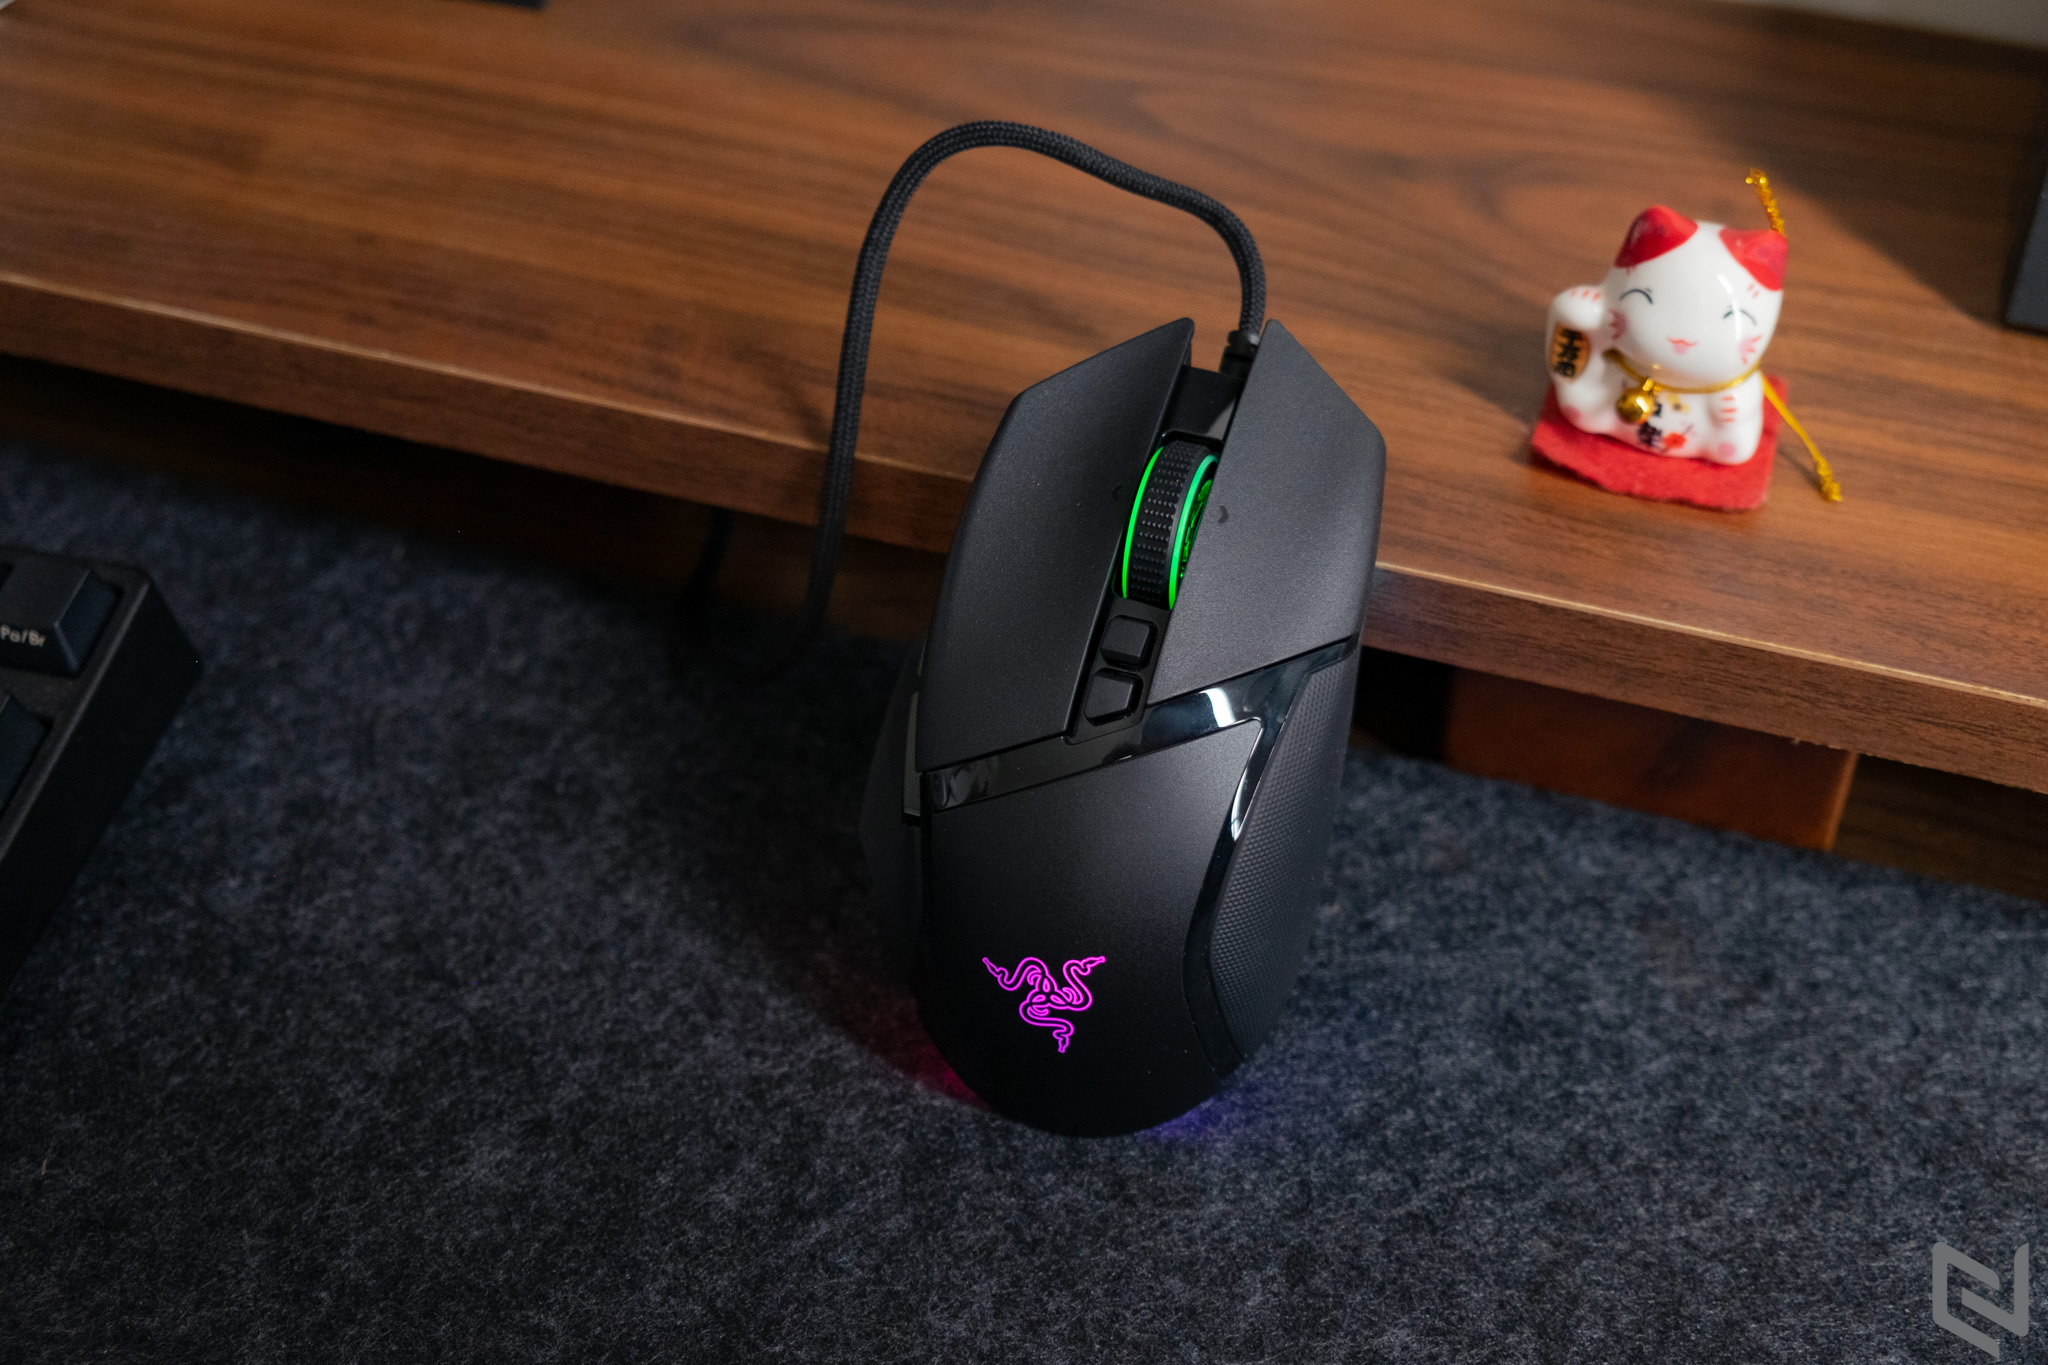 Đánh giá chuột chơi game Razer Basilisk V3: Hiệu năng khủng, hiệu ứng đèn LED đẹp, gần chạm ngưỡng hoàn mỹ